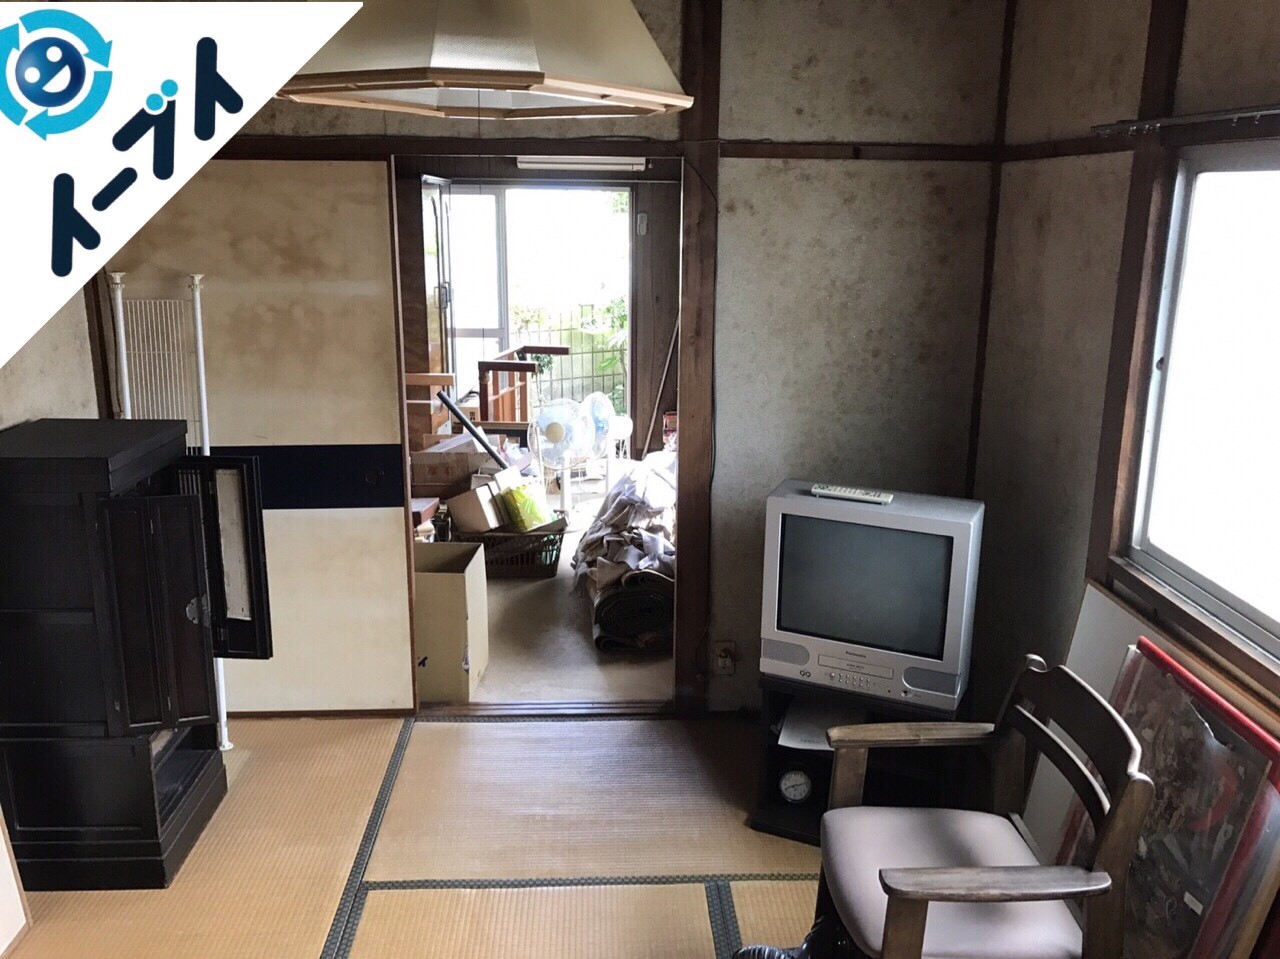 2017年8月20日大阪府能勢町で遺品整理の依頼を受け家具や廃品の処分をしました。6